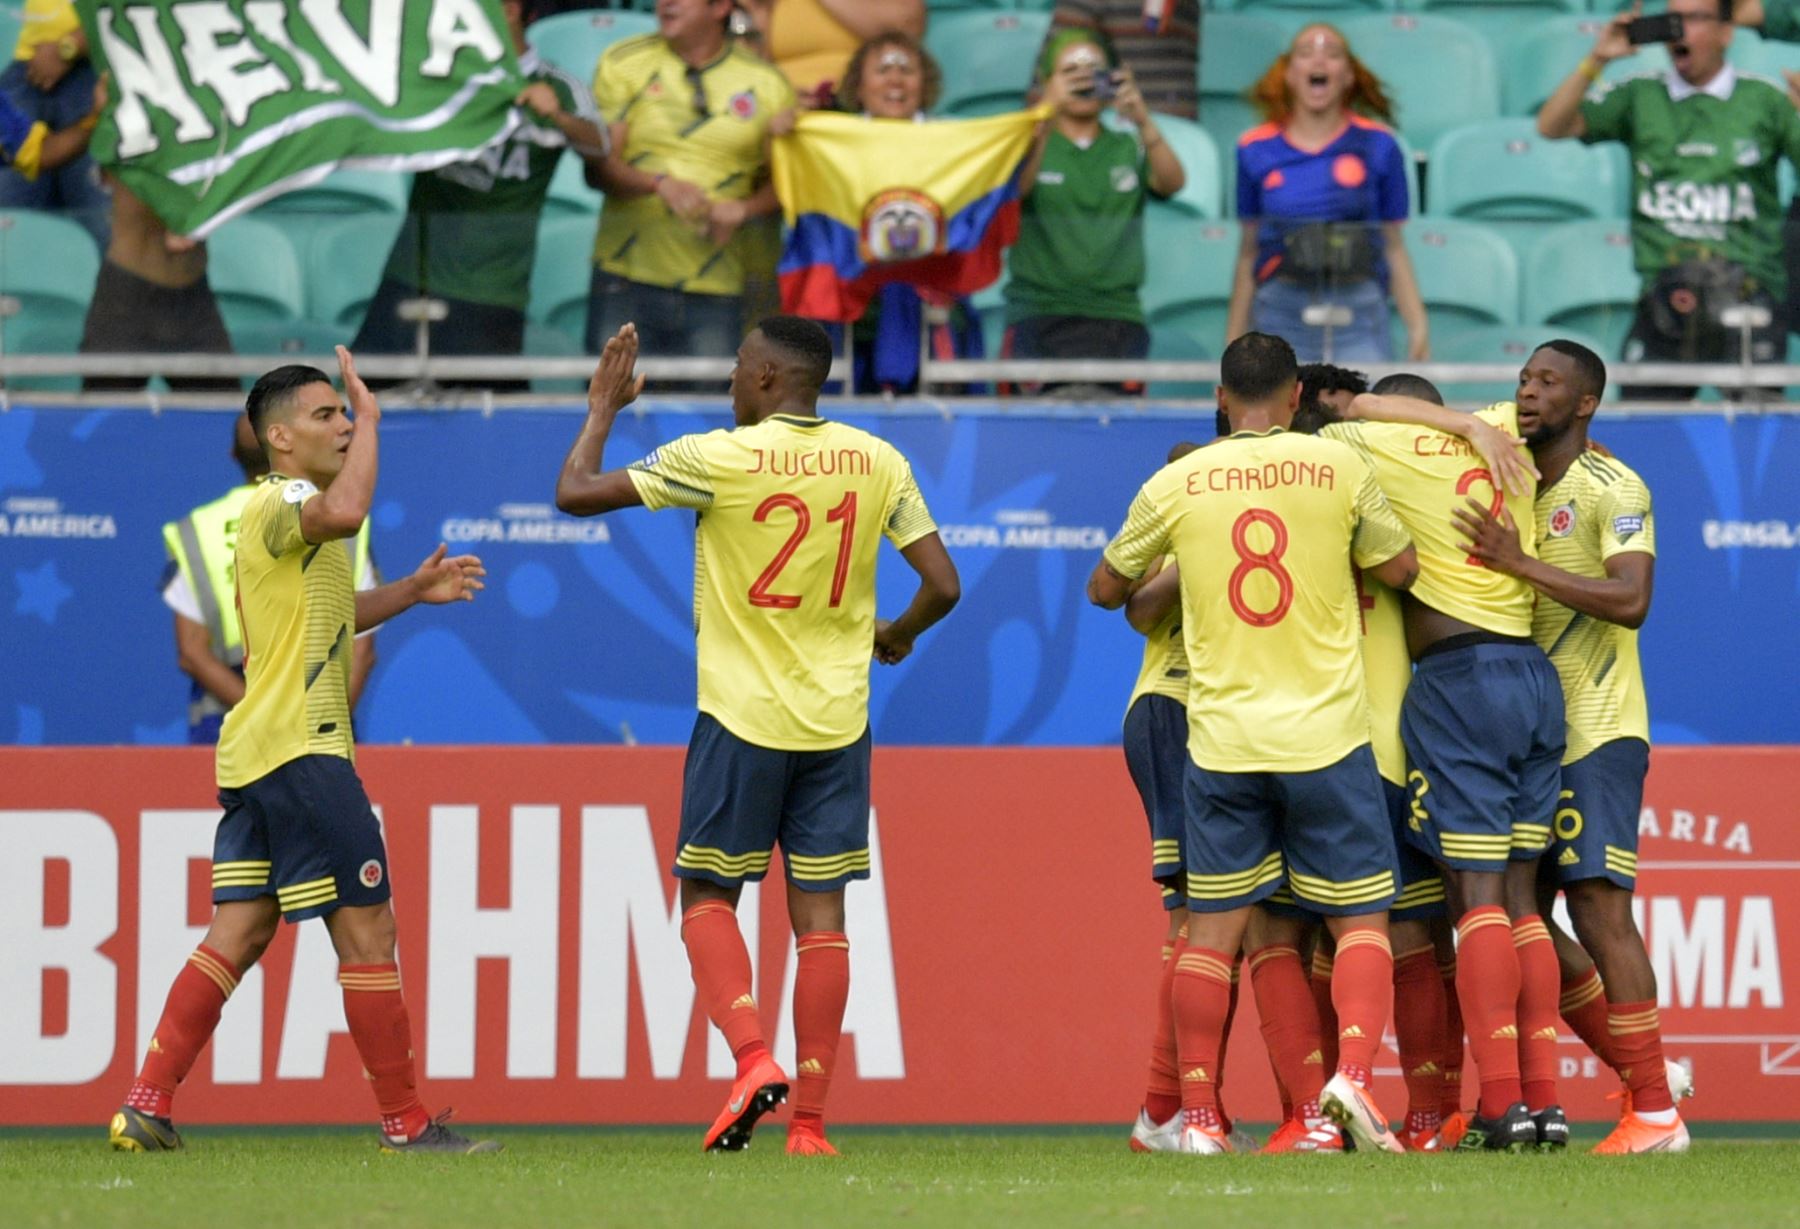 Gustavo Cuellar (cubierto) de Colombia celebra con sus compañeros de equipo luego de anotar contra Paraguay durante su partido de torneo de fútbol de la Copa América.
Foto: AFP